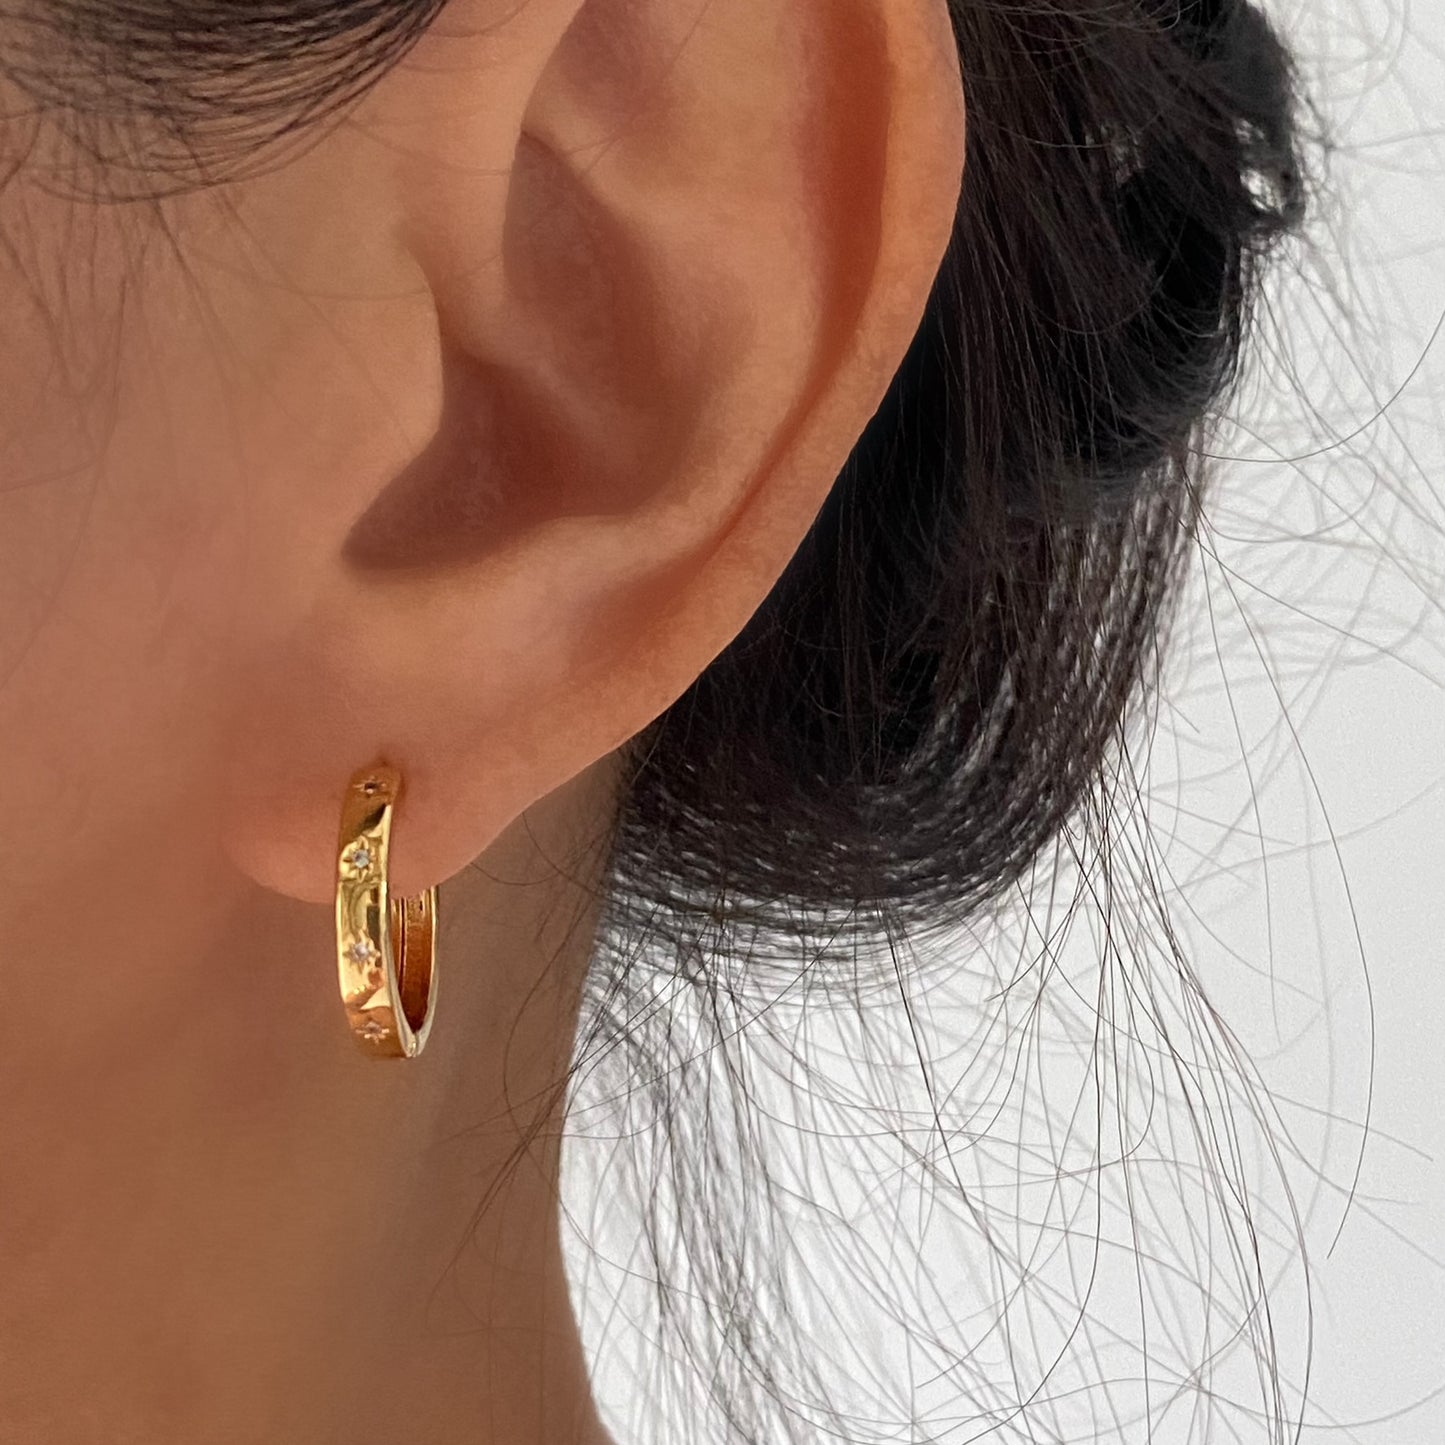 Starburst Celestial Gold Hoop Earrings 3mm thick